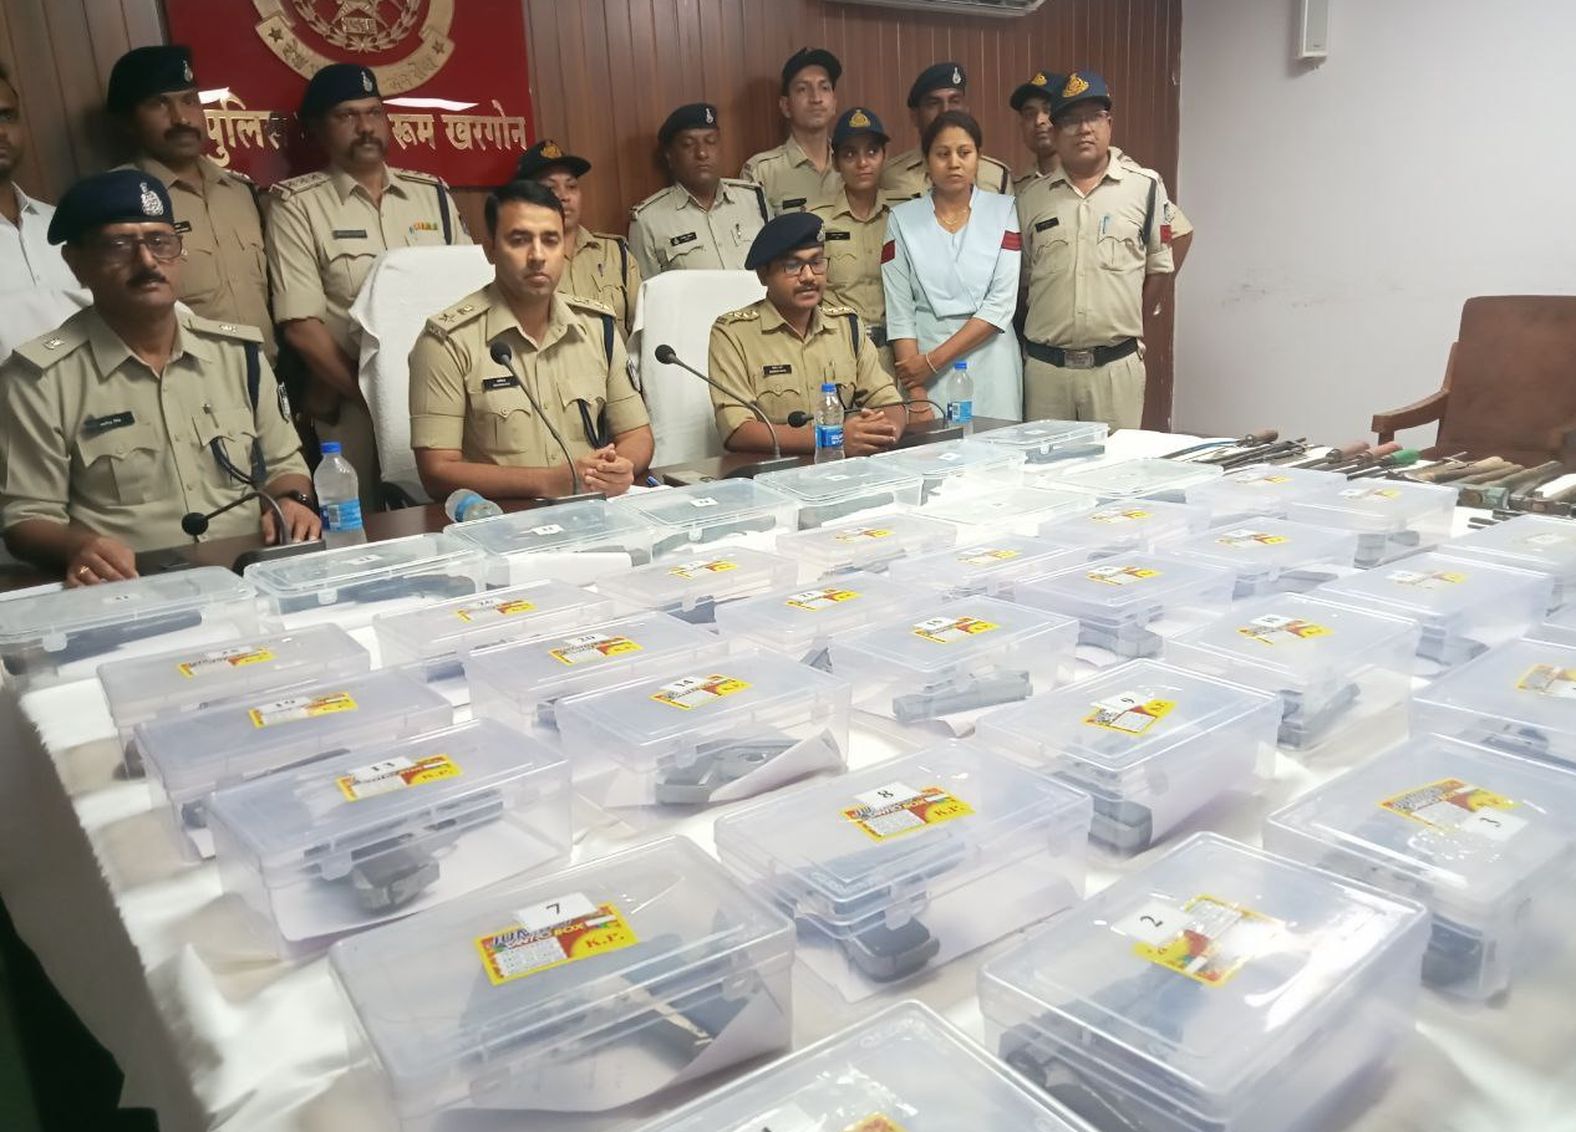 चुनाव के बीच अवैध हथियारों की खरीद-फरोख्त, पुलिस ने जब्त किए 37 देसी पिस्टल व
कट्टे